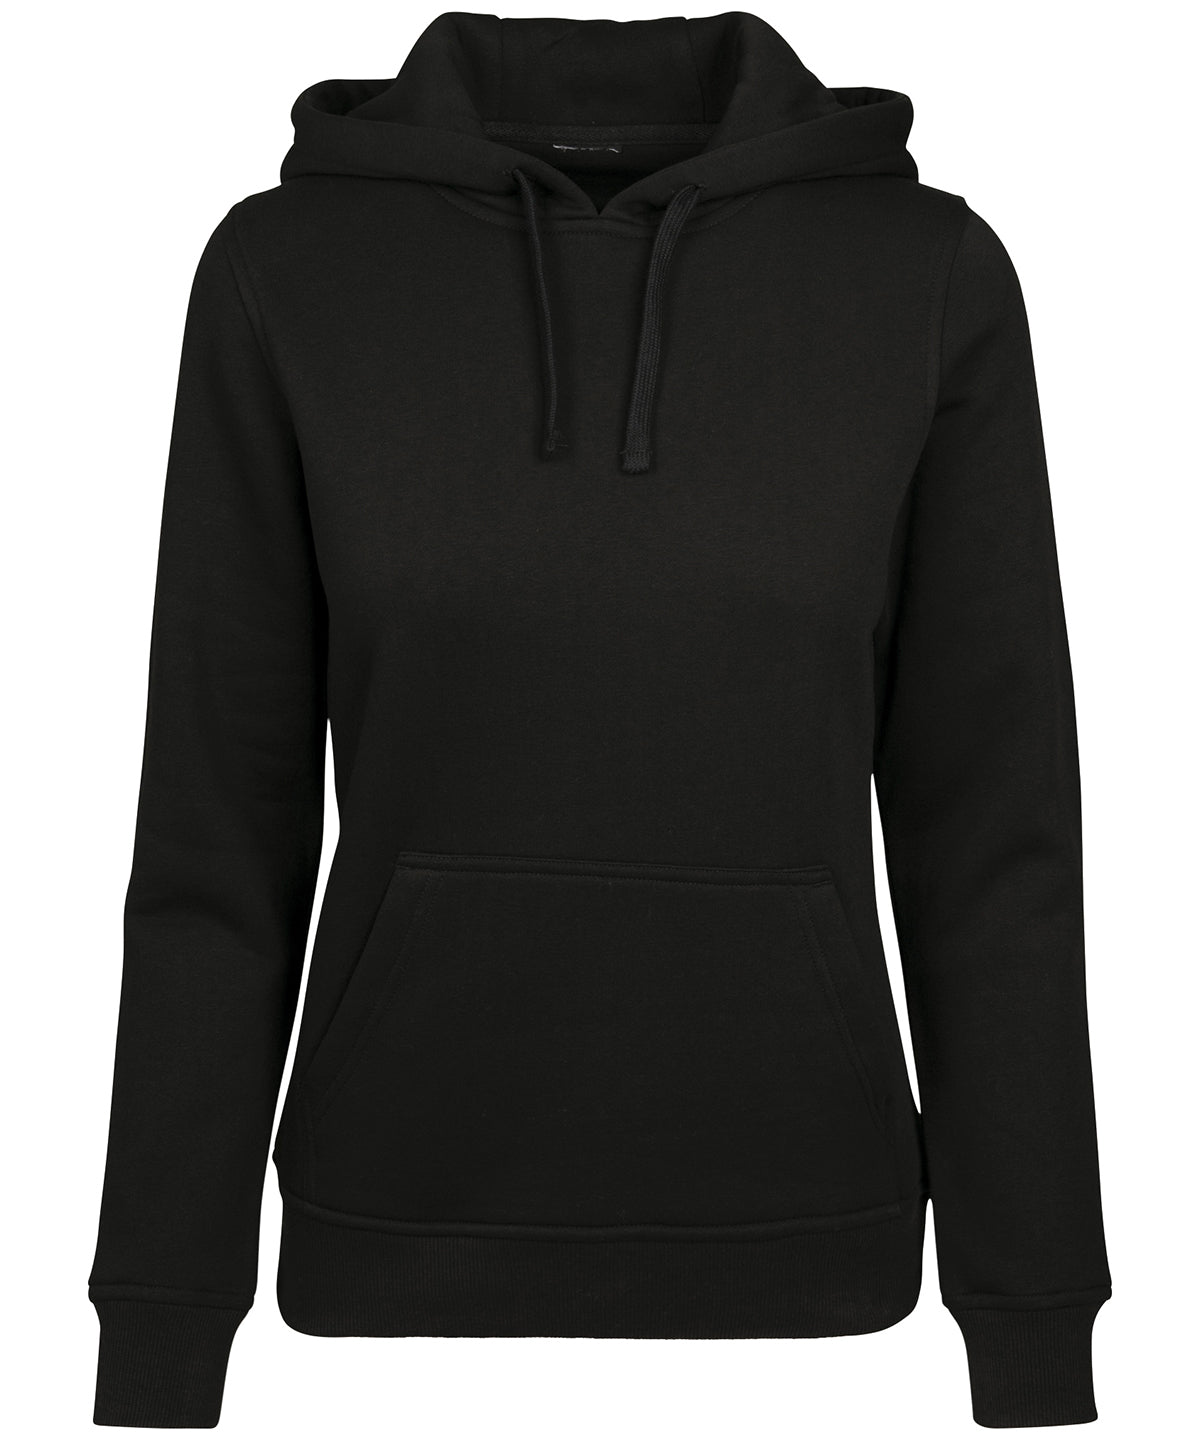 Personalised Hoodies - Black Build Your Brand Women's merch hoodie